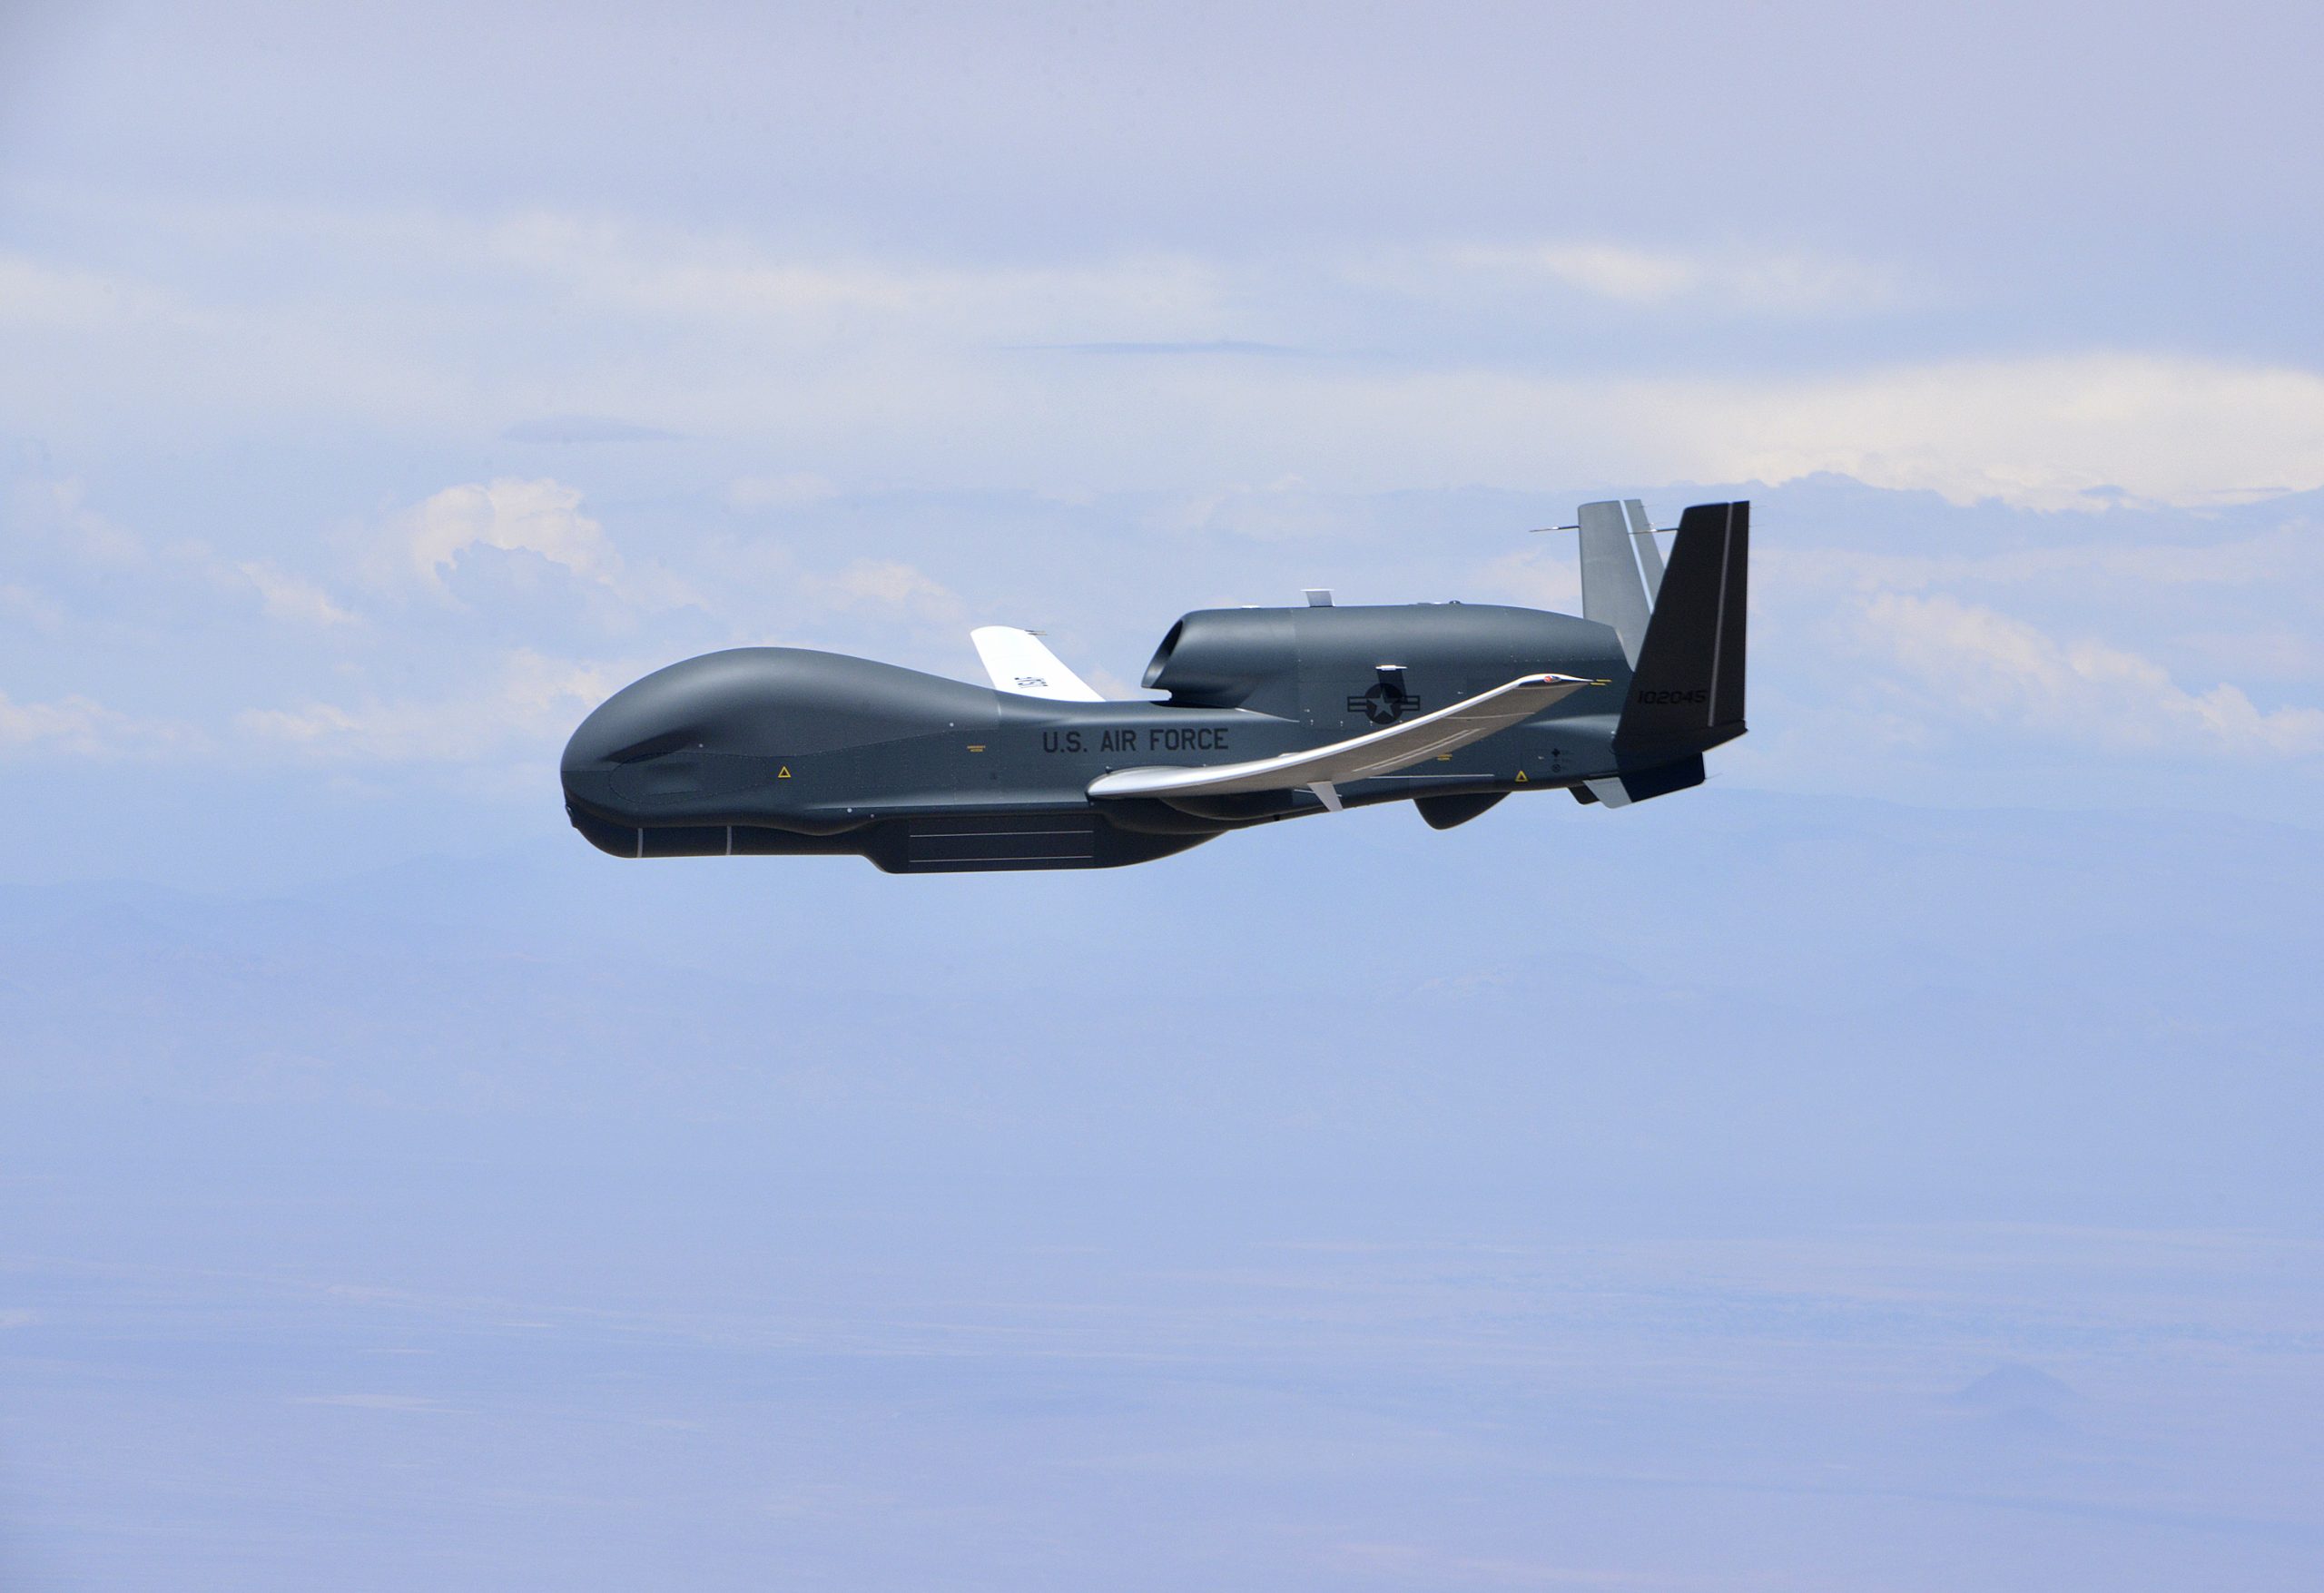 Κριμαία: Αμερικανικό αναγνωριστικό UAV μεγάλου υψομέτρου πλησίασε στα 100 χιλιόμετρα από το Κράσνονταρ!